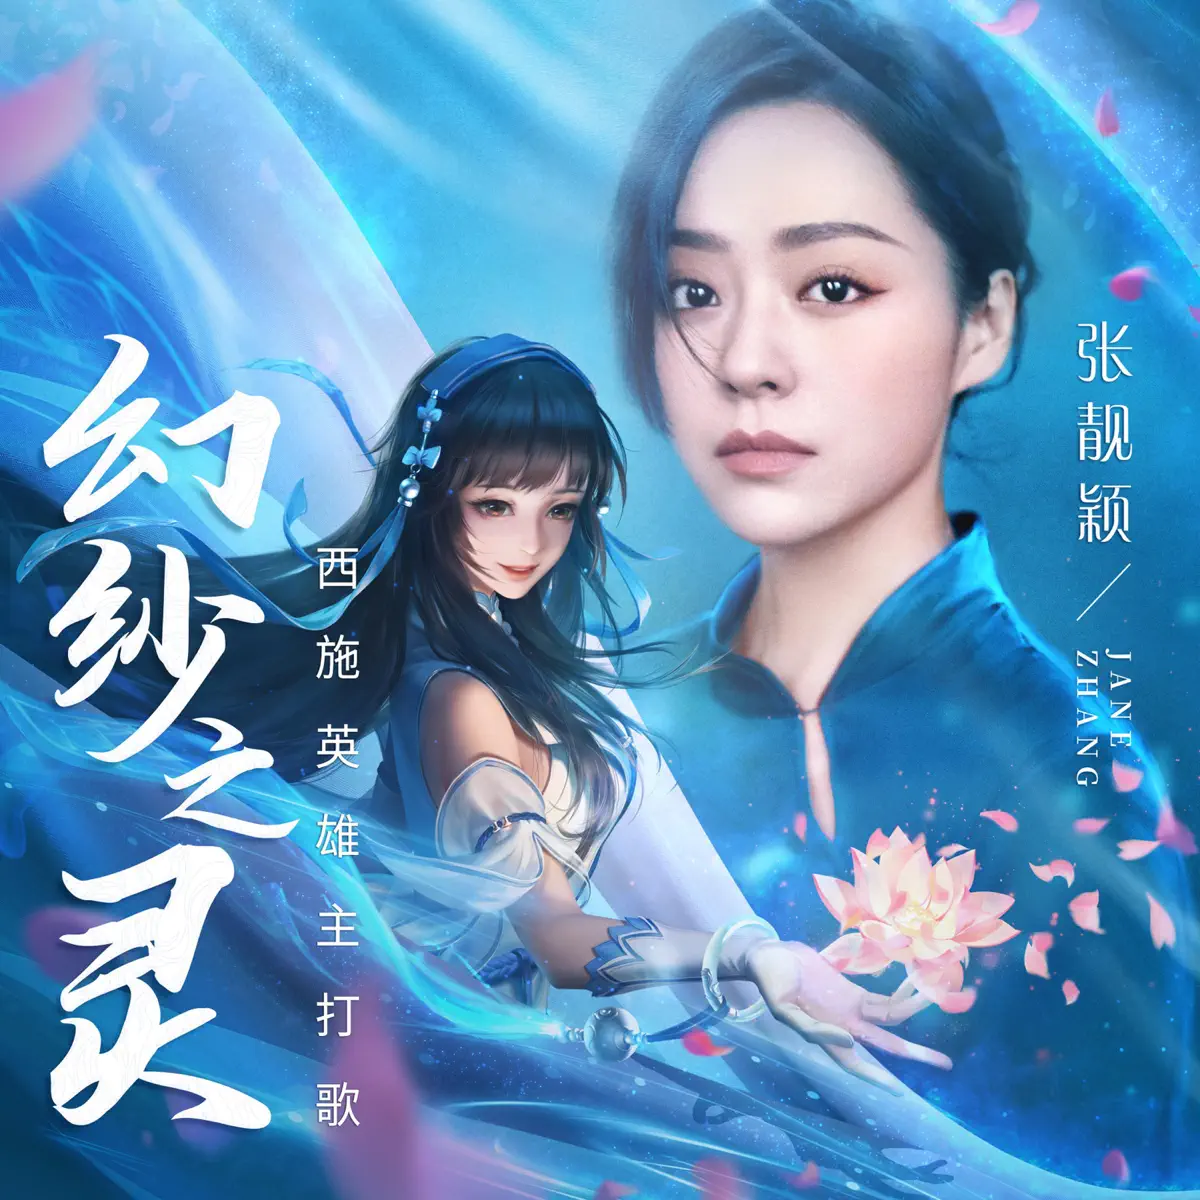 张靓颖 - 幻纱之灵 - Single (2019) [iTunes Plus AAC M4A]-新房子